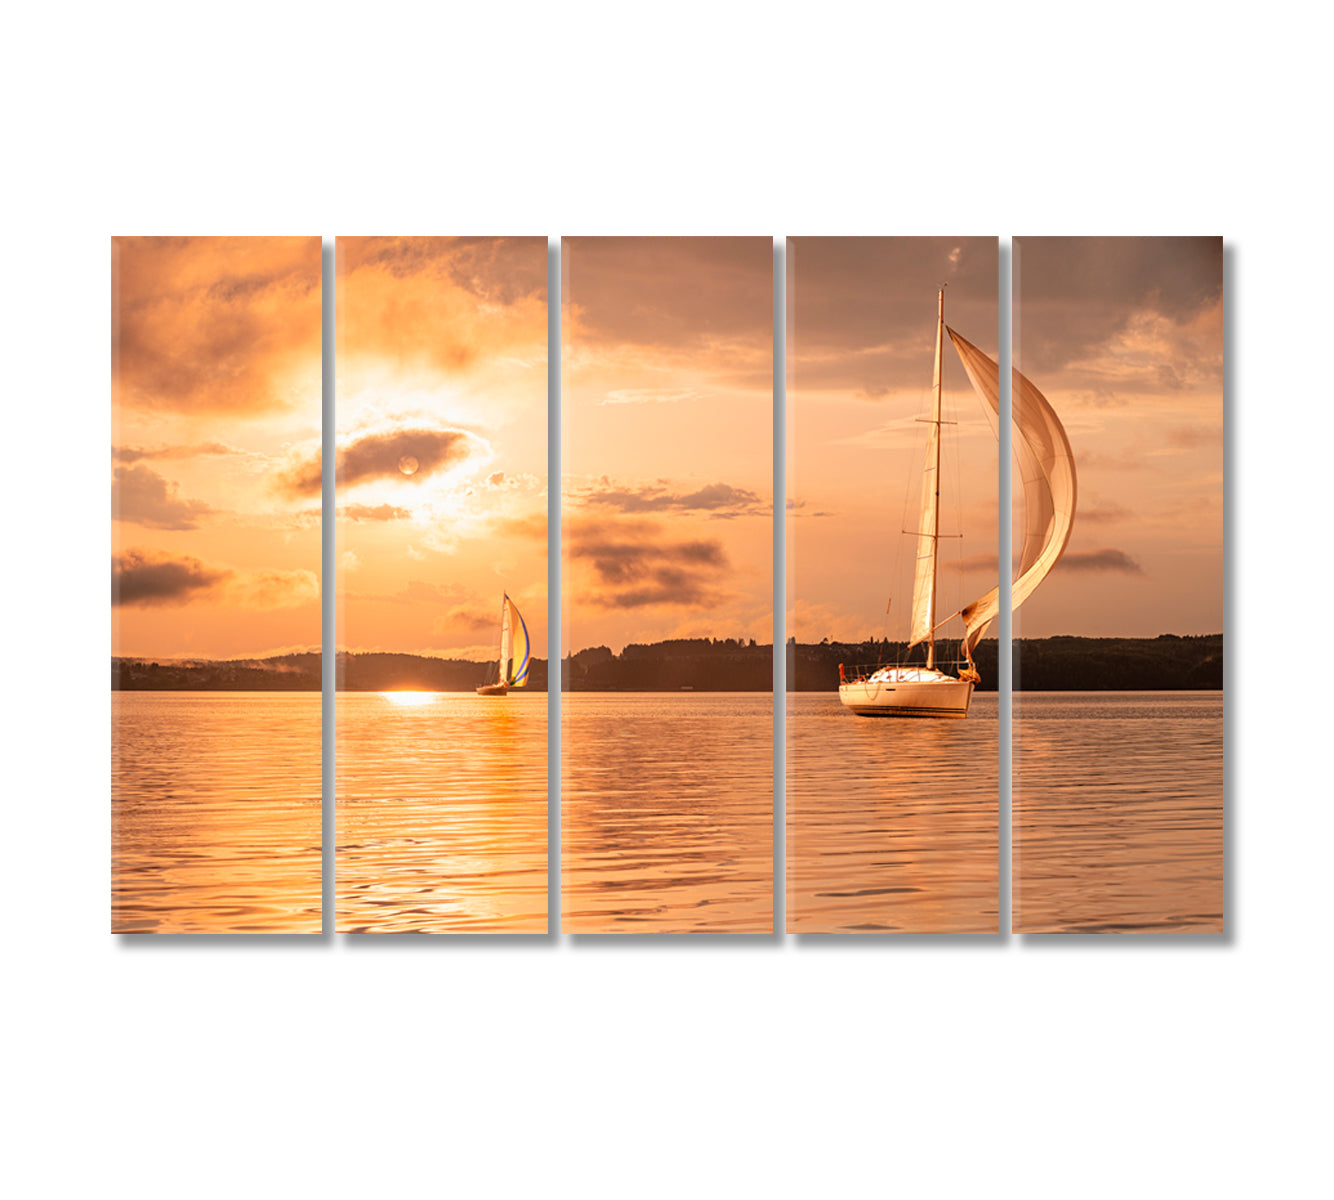 Sailing Yacht at Incredible Sunset Canvas Print-Canvas Print-CetArt-5 Panels-36x24 inches-CetArt